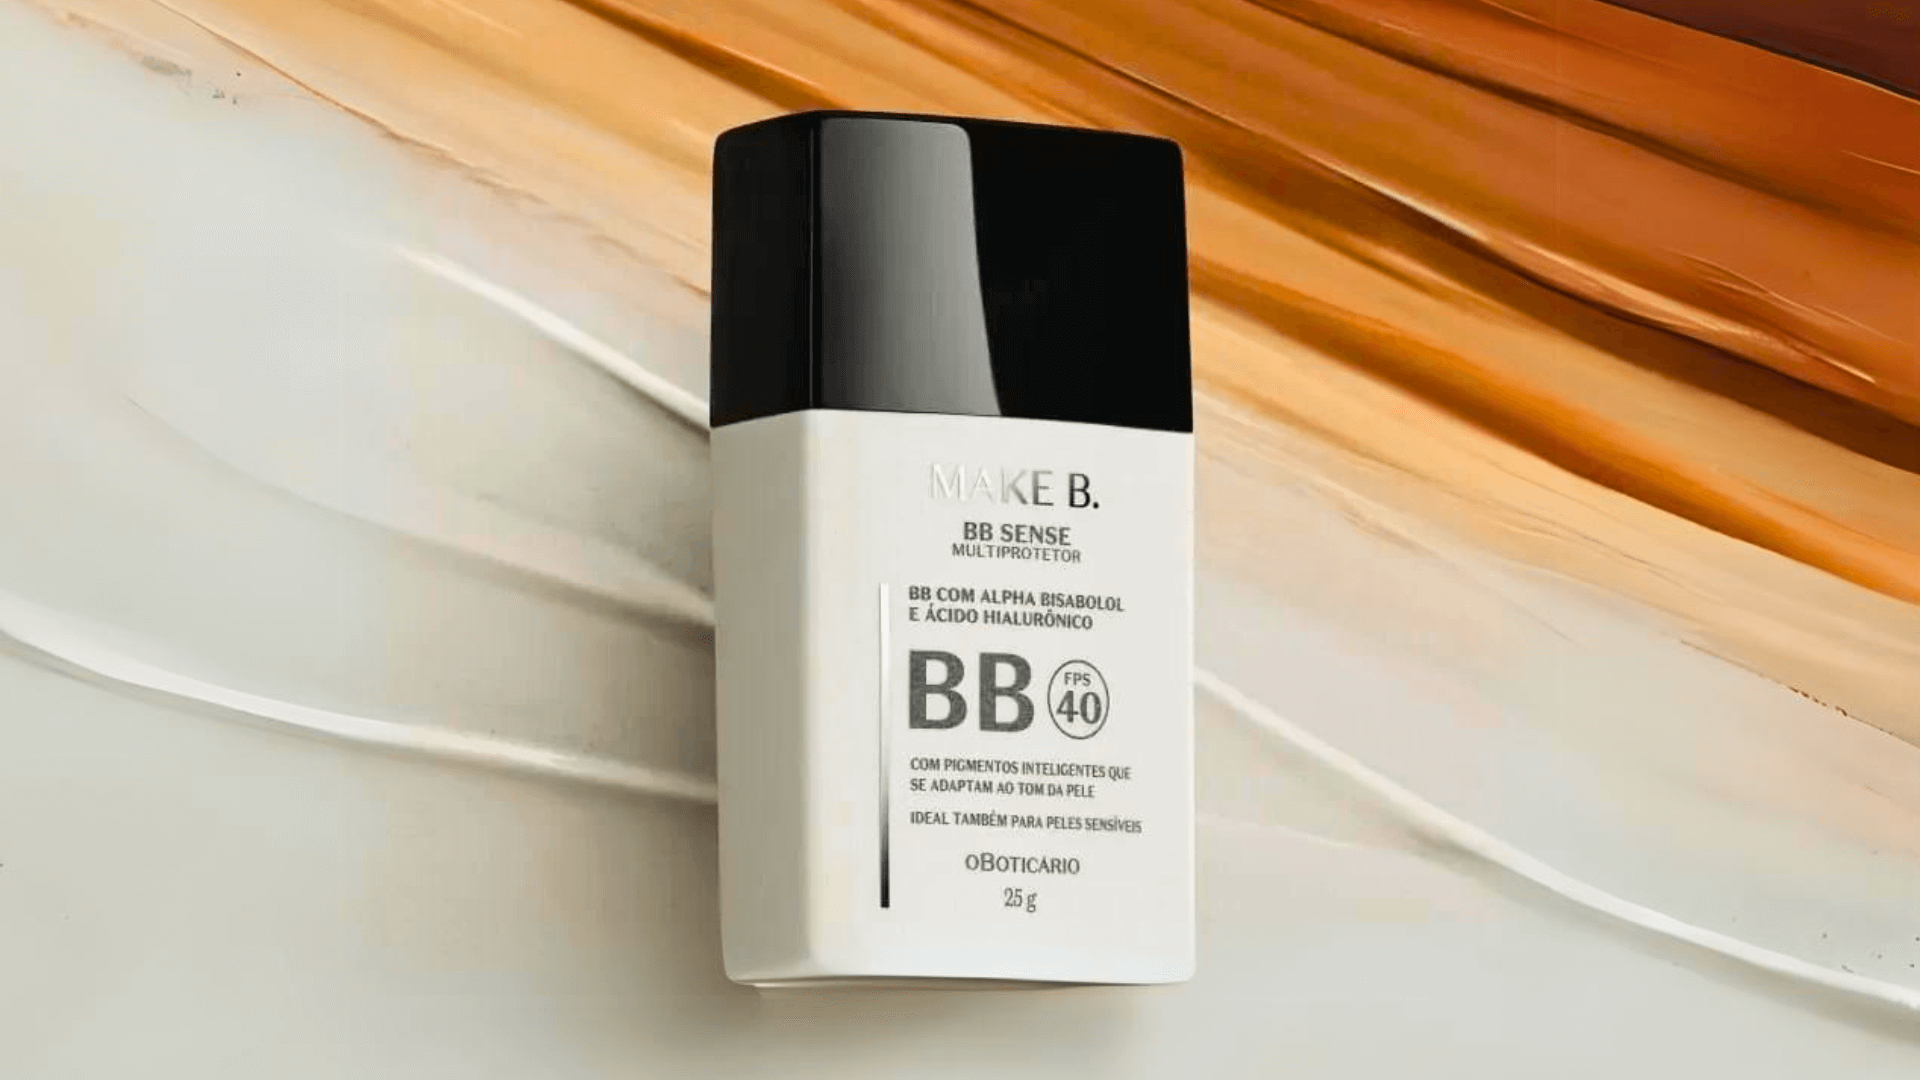 Make representativa: O Boticário lança BB Cream adaptável a diversos tons de pele